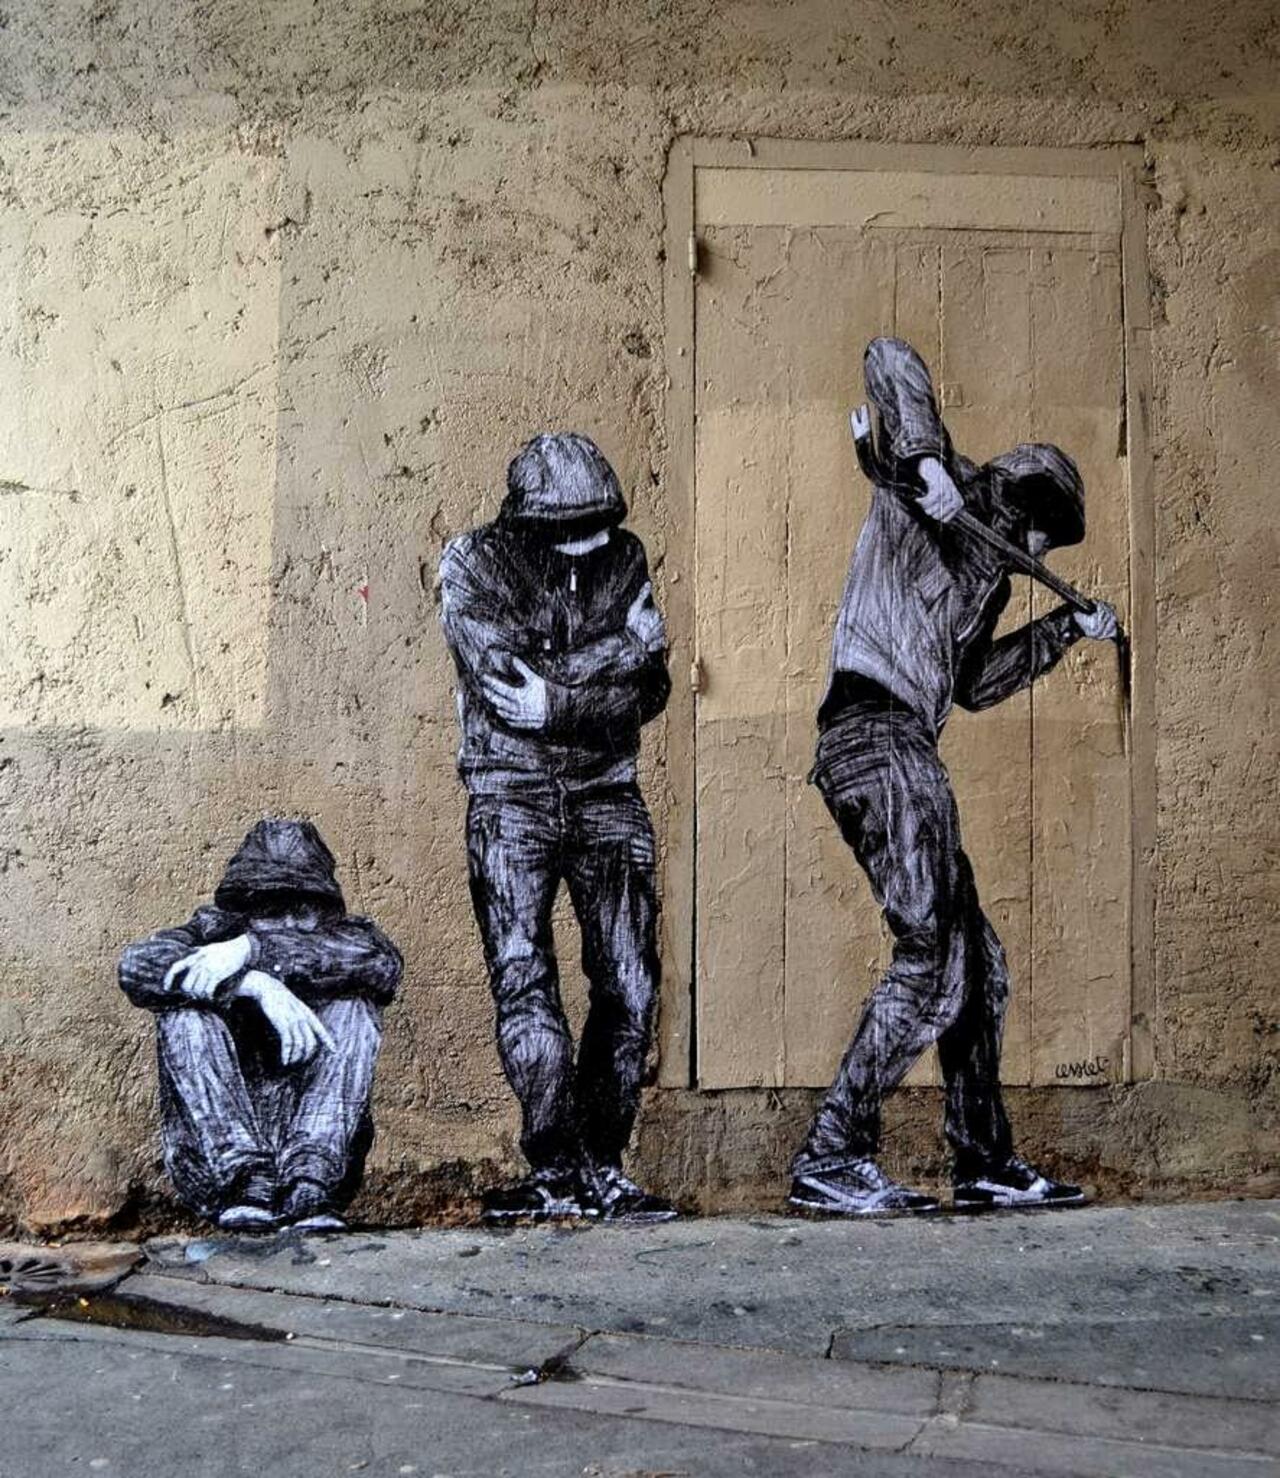 Levalet creates "Open Doors", a new street piece in Paris, France

#streetart #urbanart #mural #art #graffiti http://t.co/tH5vud8LwW